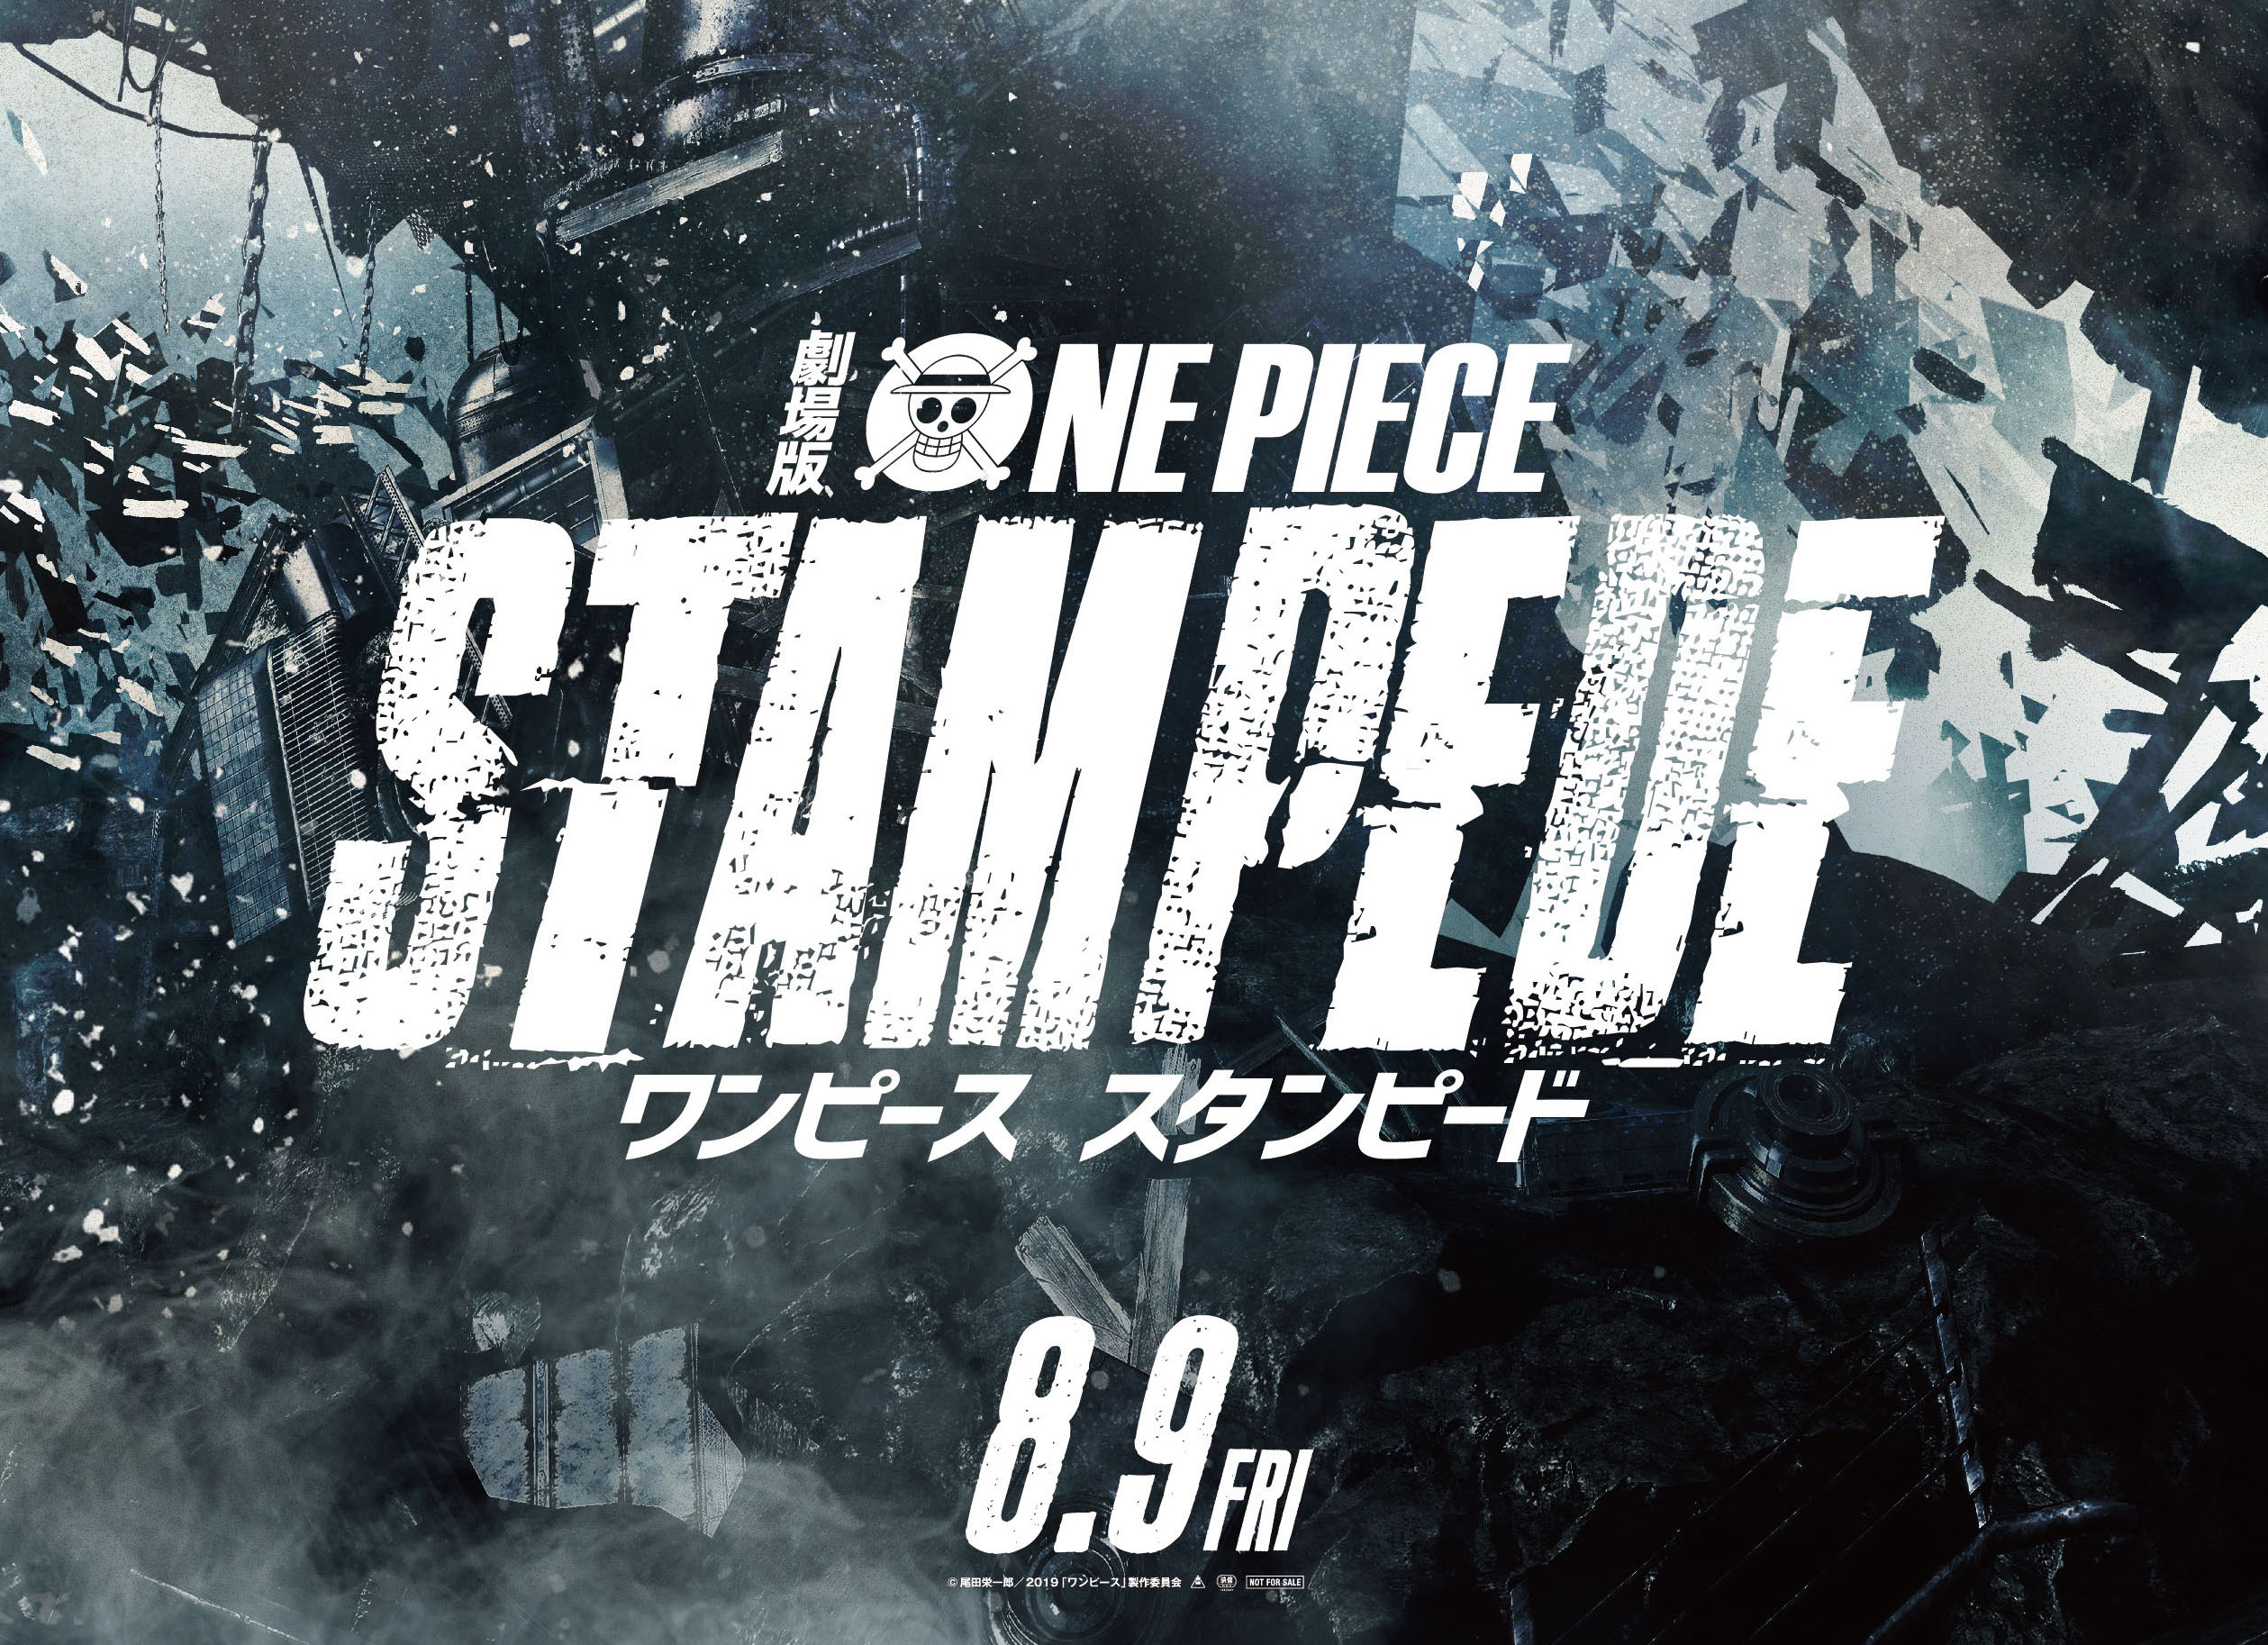 Movie One Piece 2019 Stampede - HD Wallpaper 